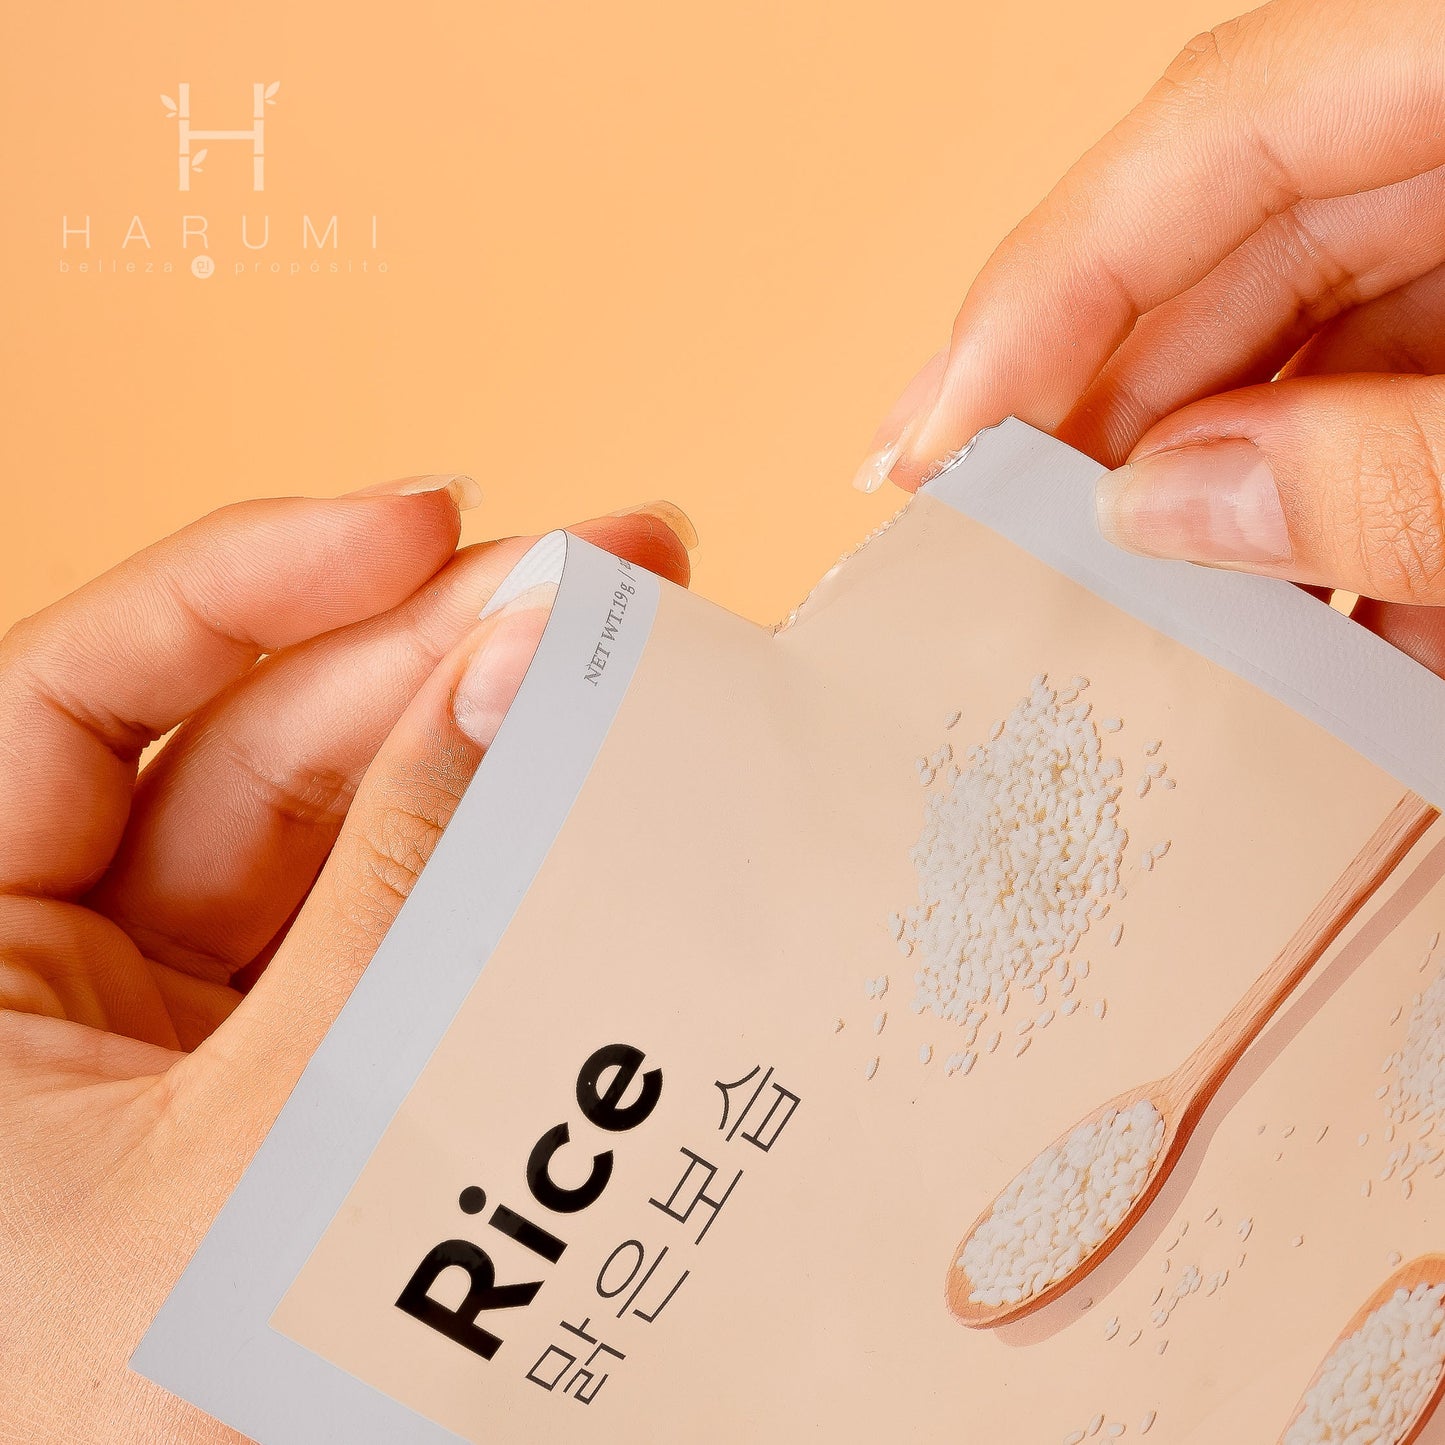 Missha Airy Fit Sheet Mask Rice Skincare maquillaje productos de belleza coreanos en Colombia kbeauty